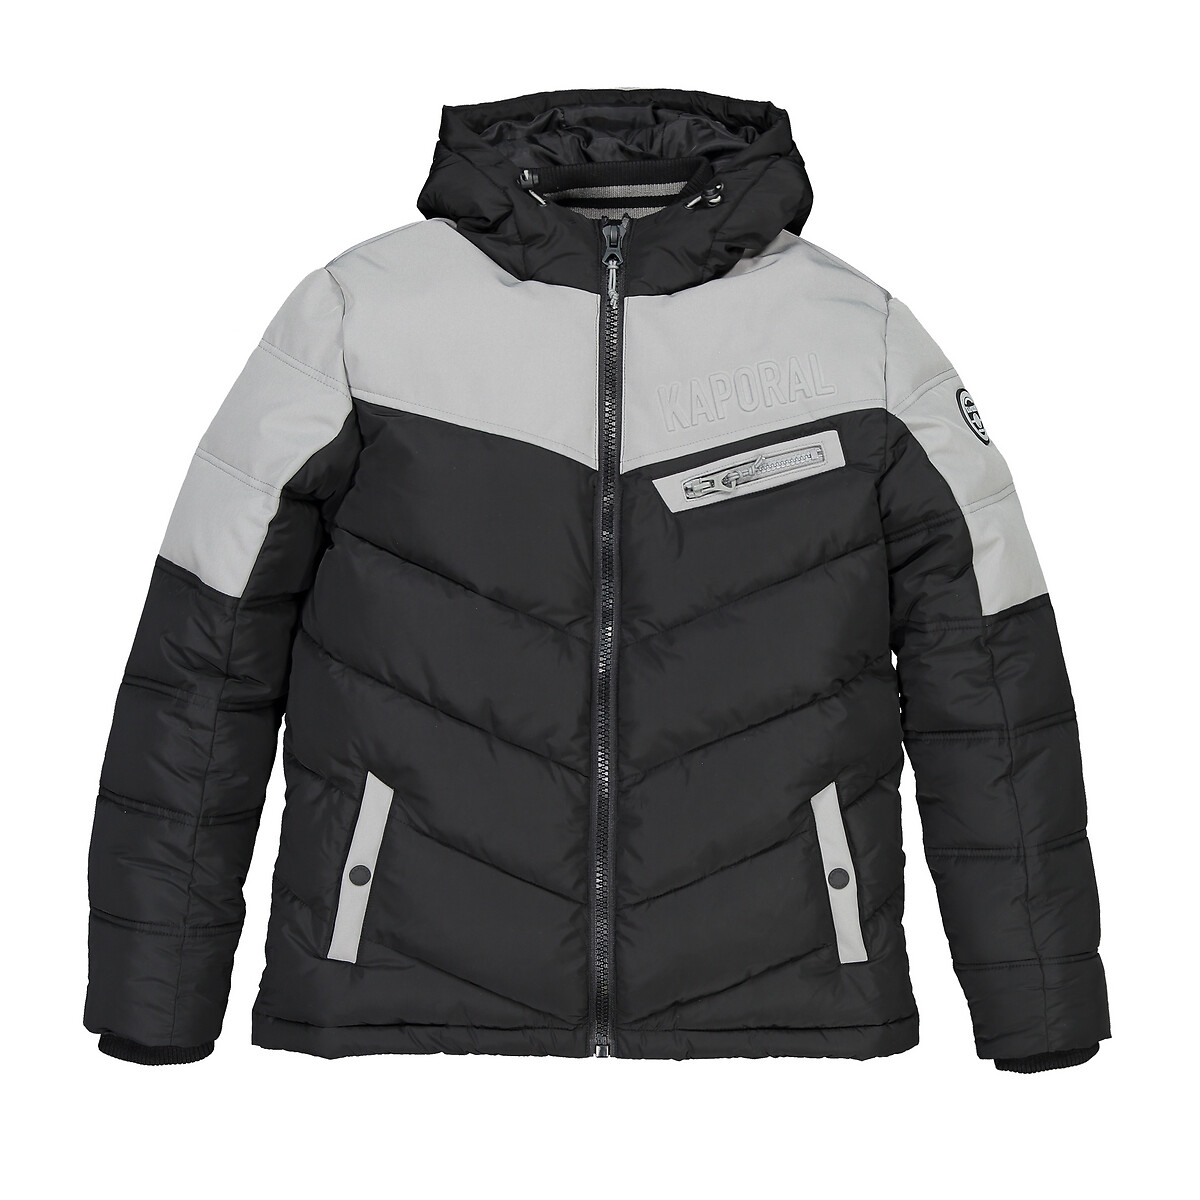 Куртка La Redoute С капюшоном 10-16 лет 16 лет - 174 см черный, размер 16